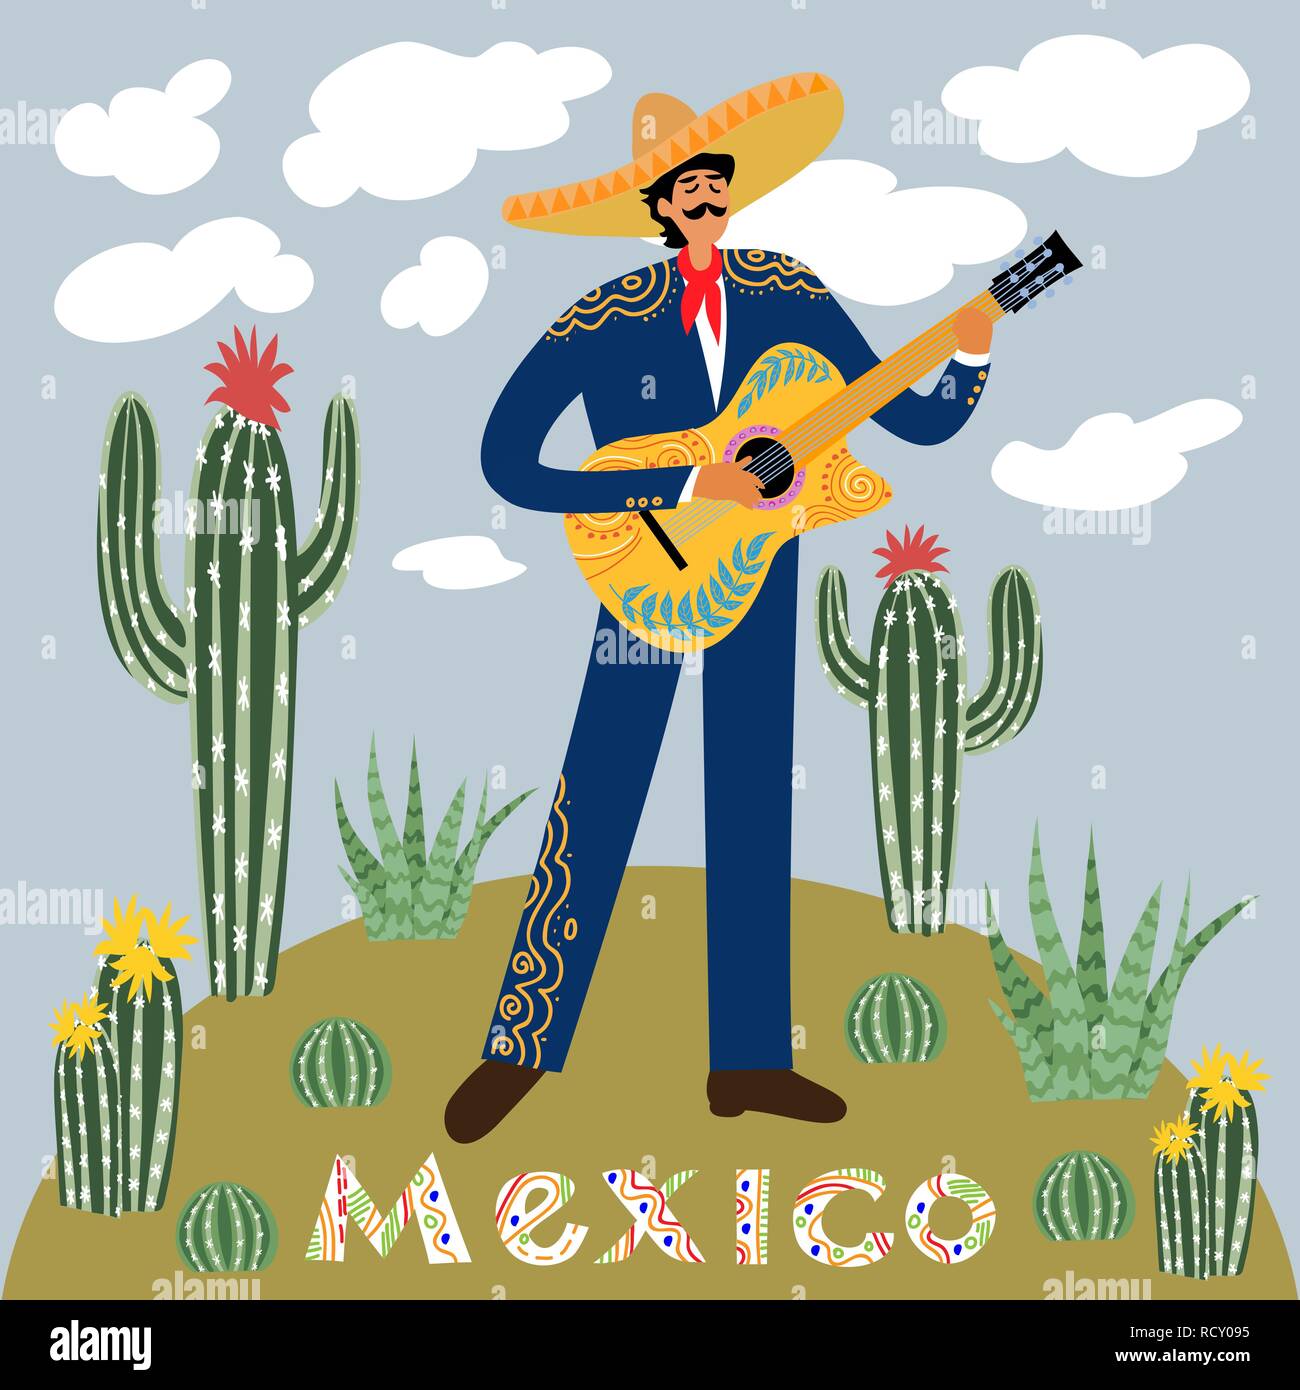 Télévision caricature d'un homme qui joue de la guitare en mexicain sombrero contre le ciel avec les nuages entouré de cactus et plantes grasses Illustration de Vecteur